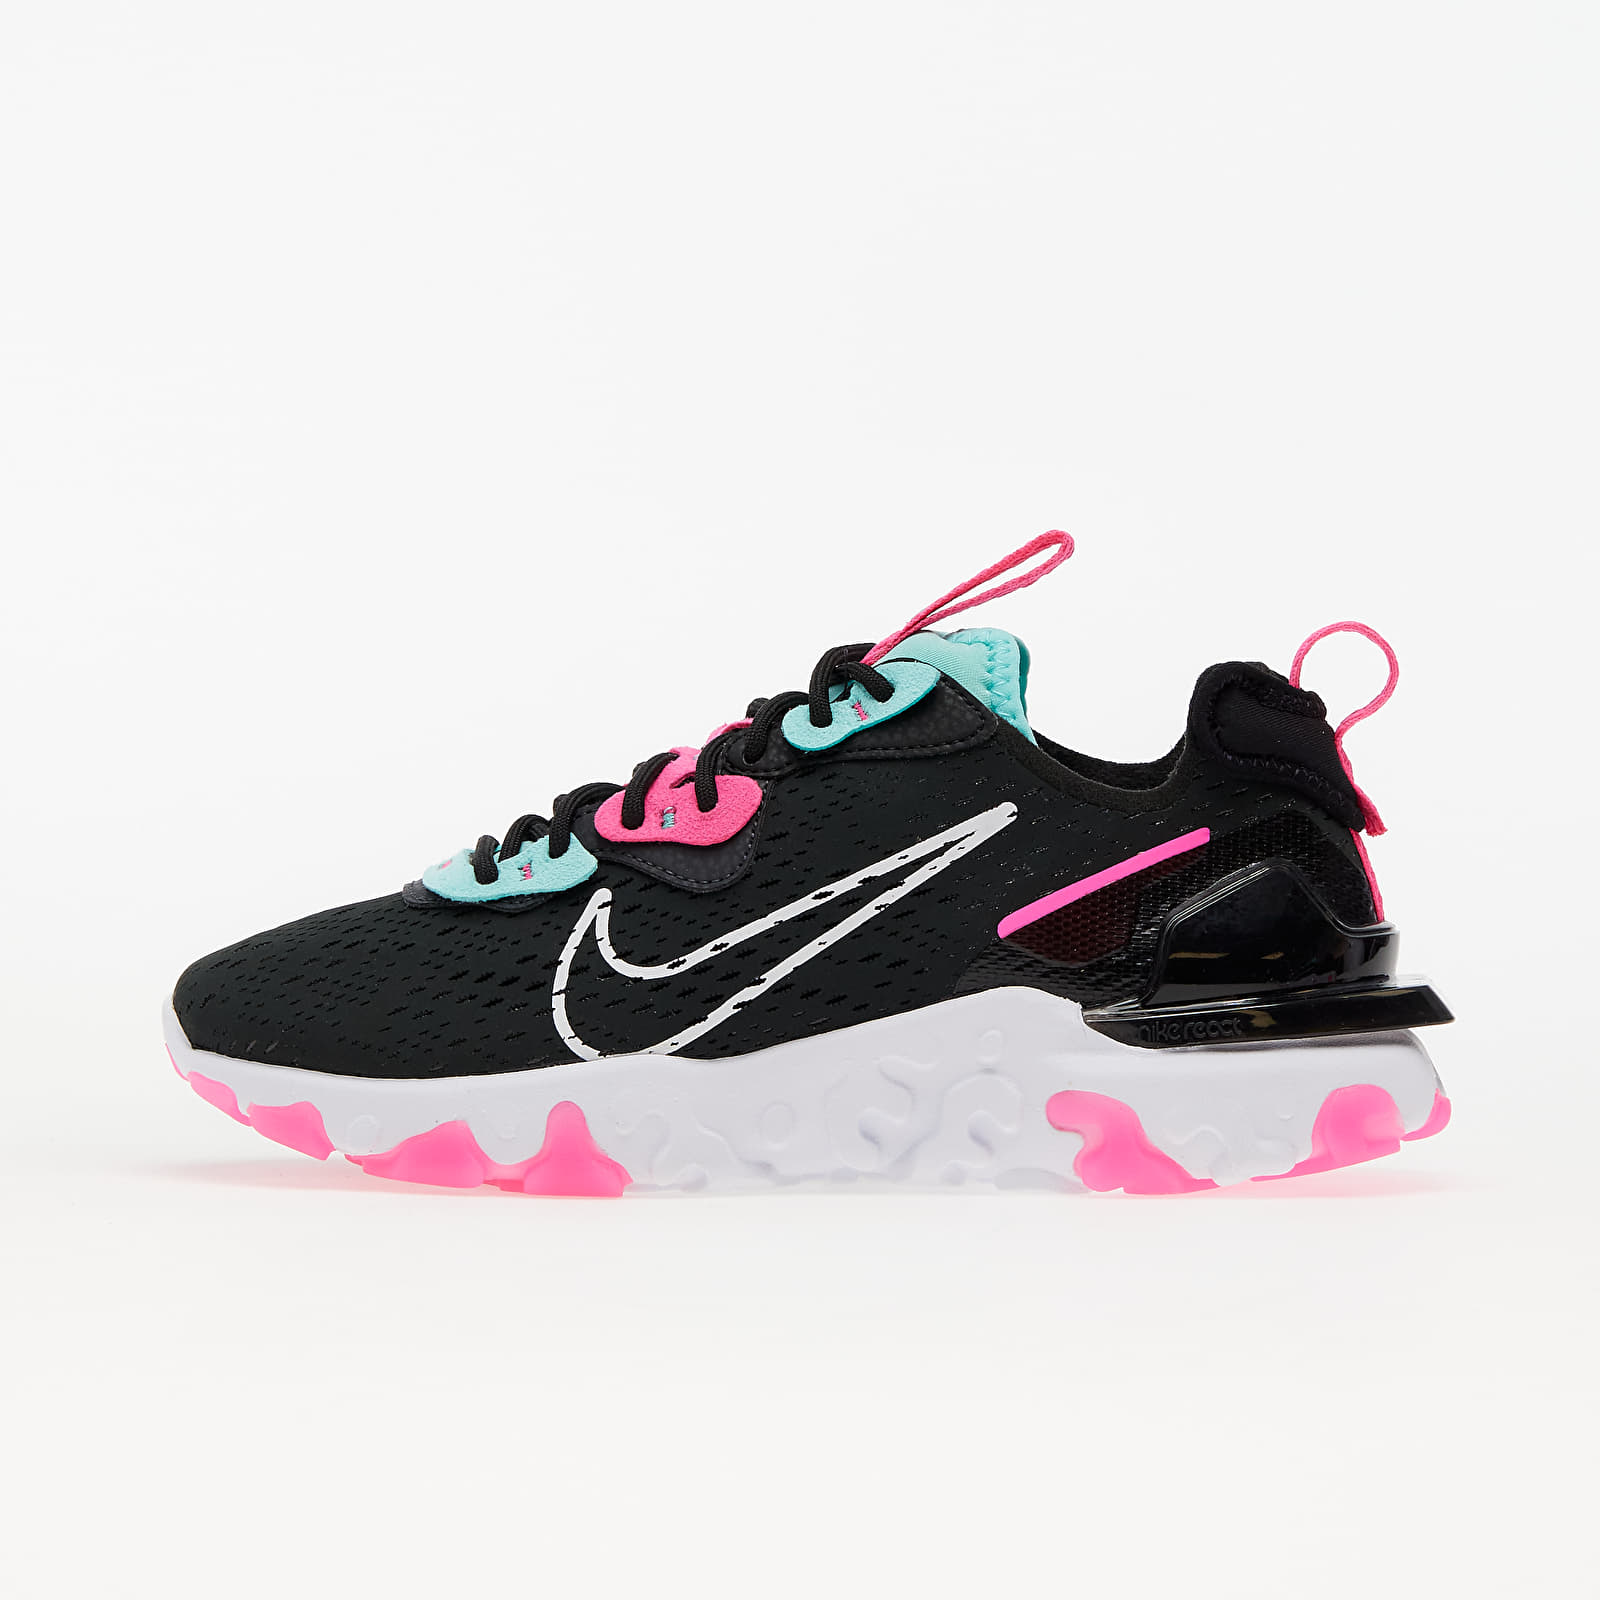 Dámske topánky a tenisky Nike W NSW React Vision Dk Smoke Grey/ White-Pink Blast